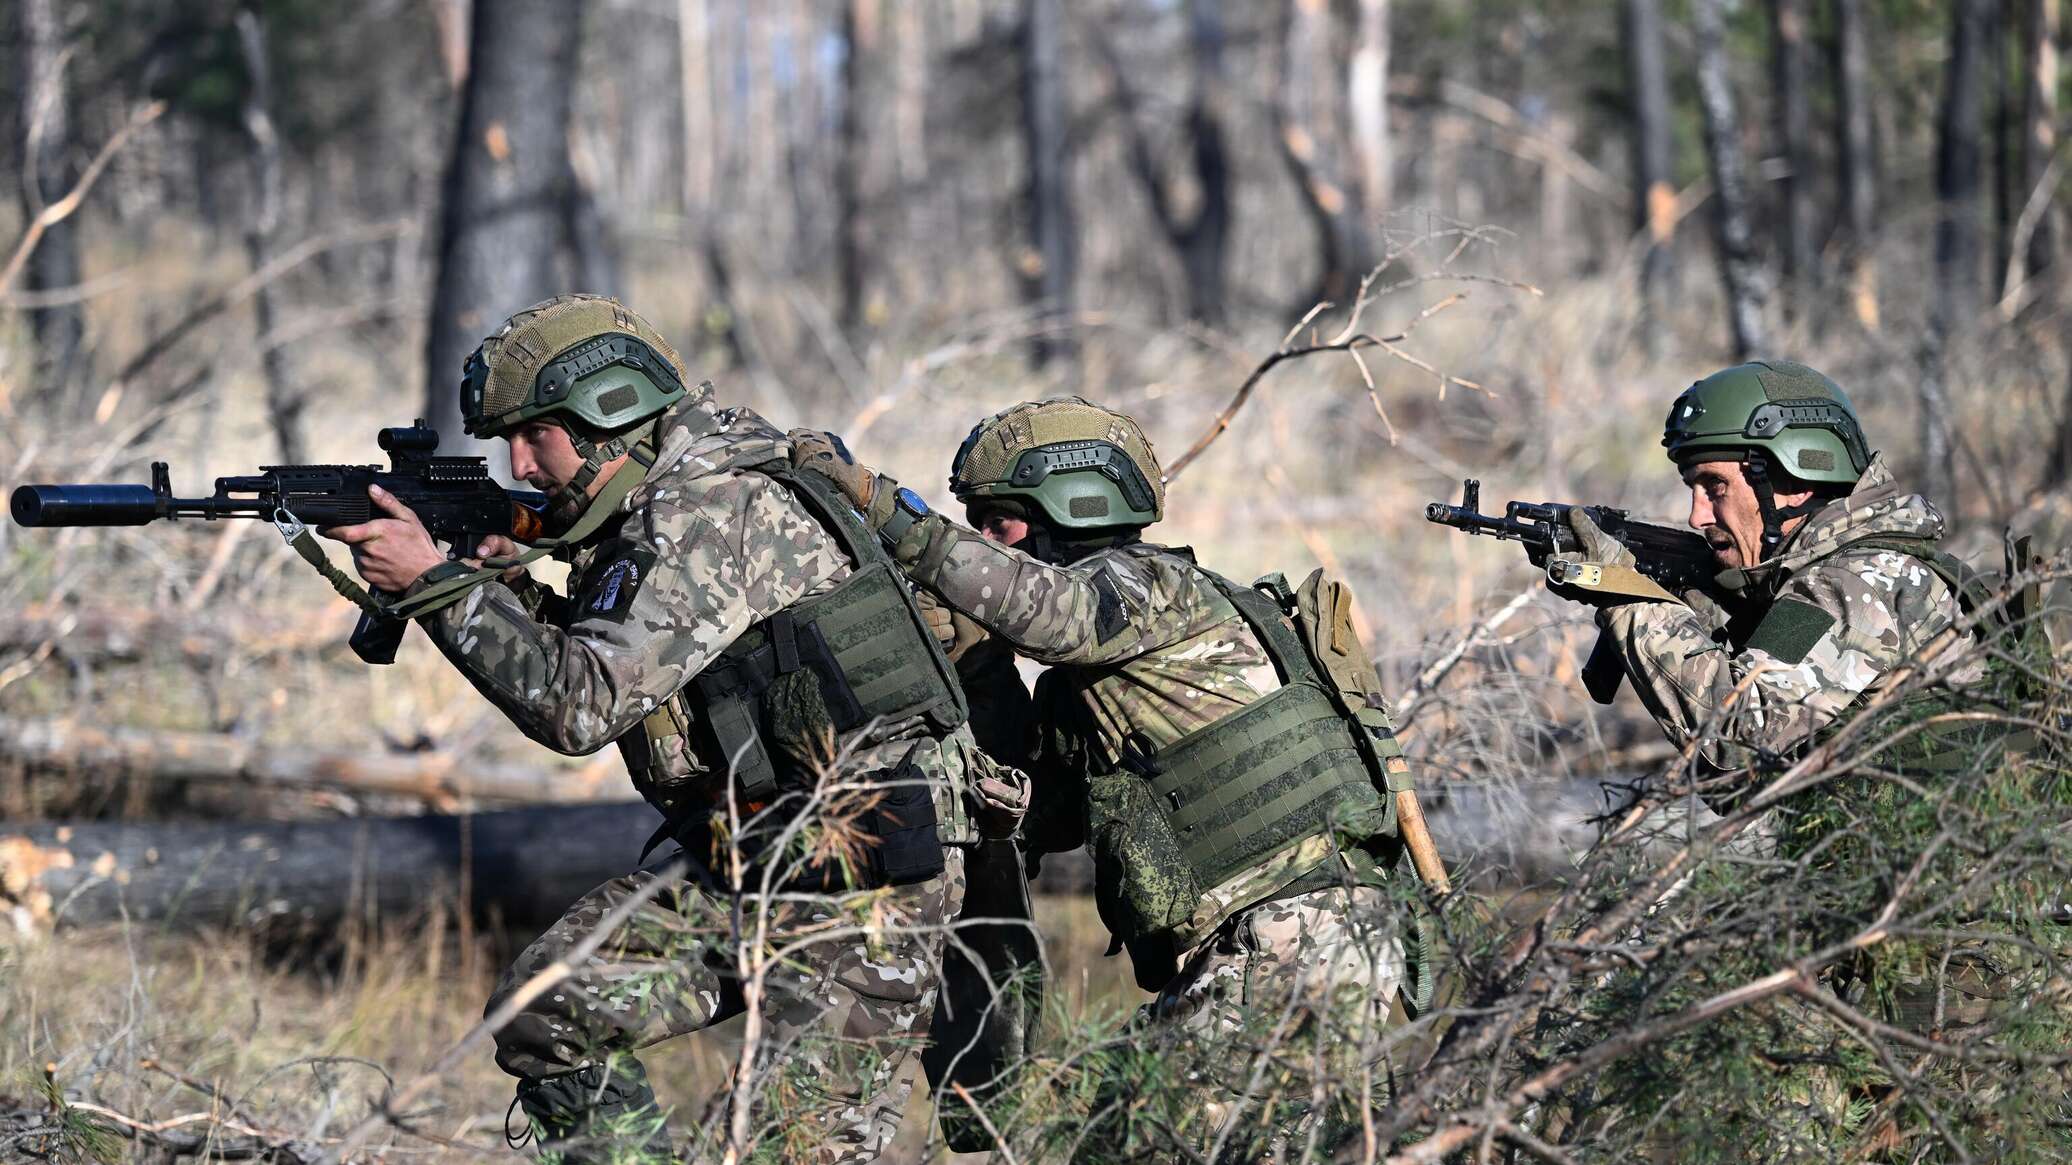 ضابط في المخابرات الأمريكية يكشف عجز واشنطن عن فهم الوضع الحقيقي في أوكرانيا